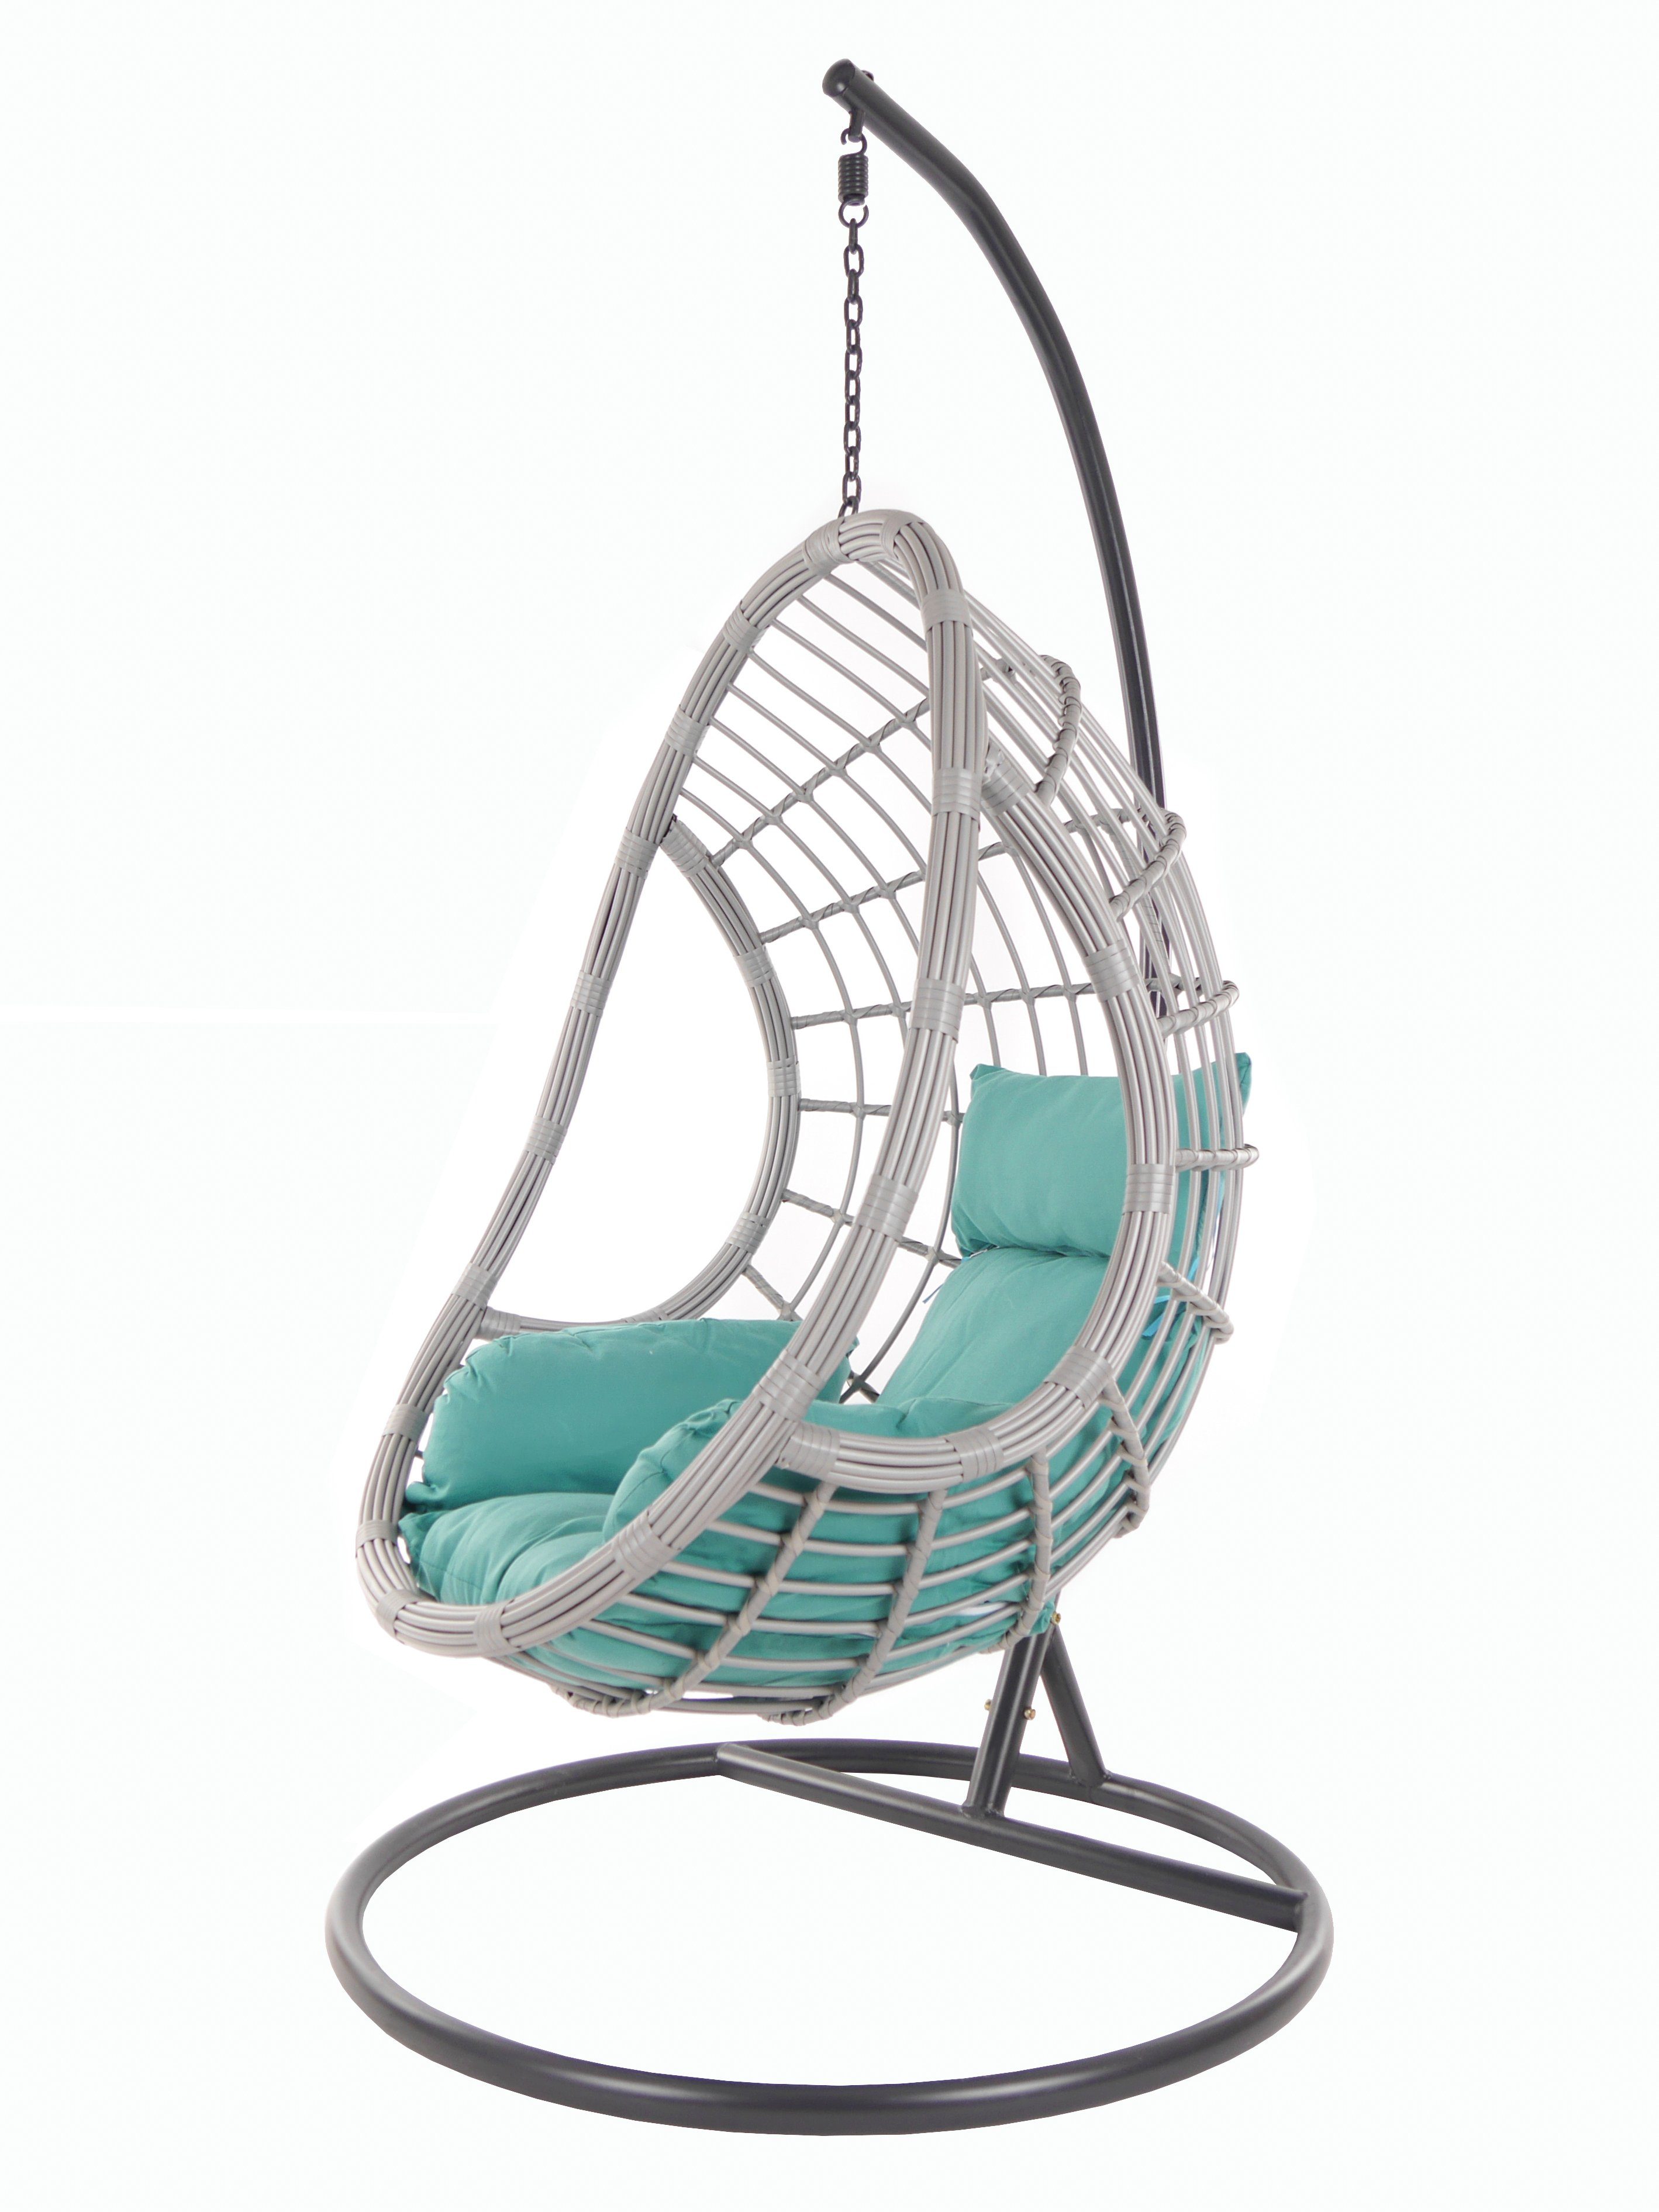 KIDEO Hängesessel PALMANOVA lightgrey, Schwebesessel mit Gestell und Kissen, Swing Chair, Loungemöbel meeresblau (5060 ocean)